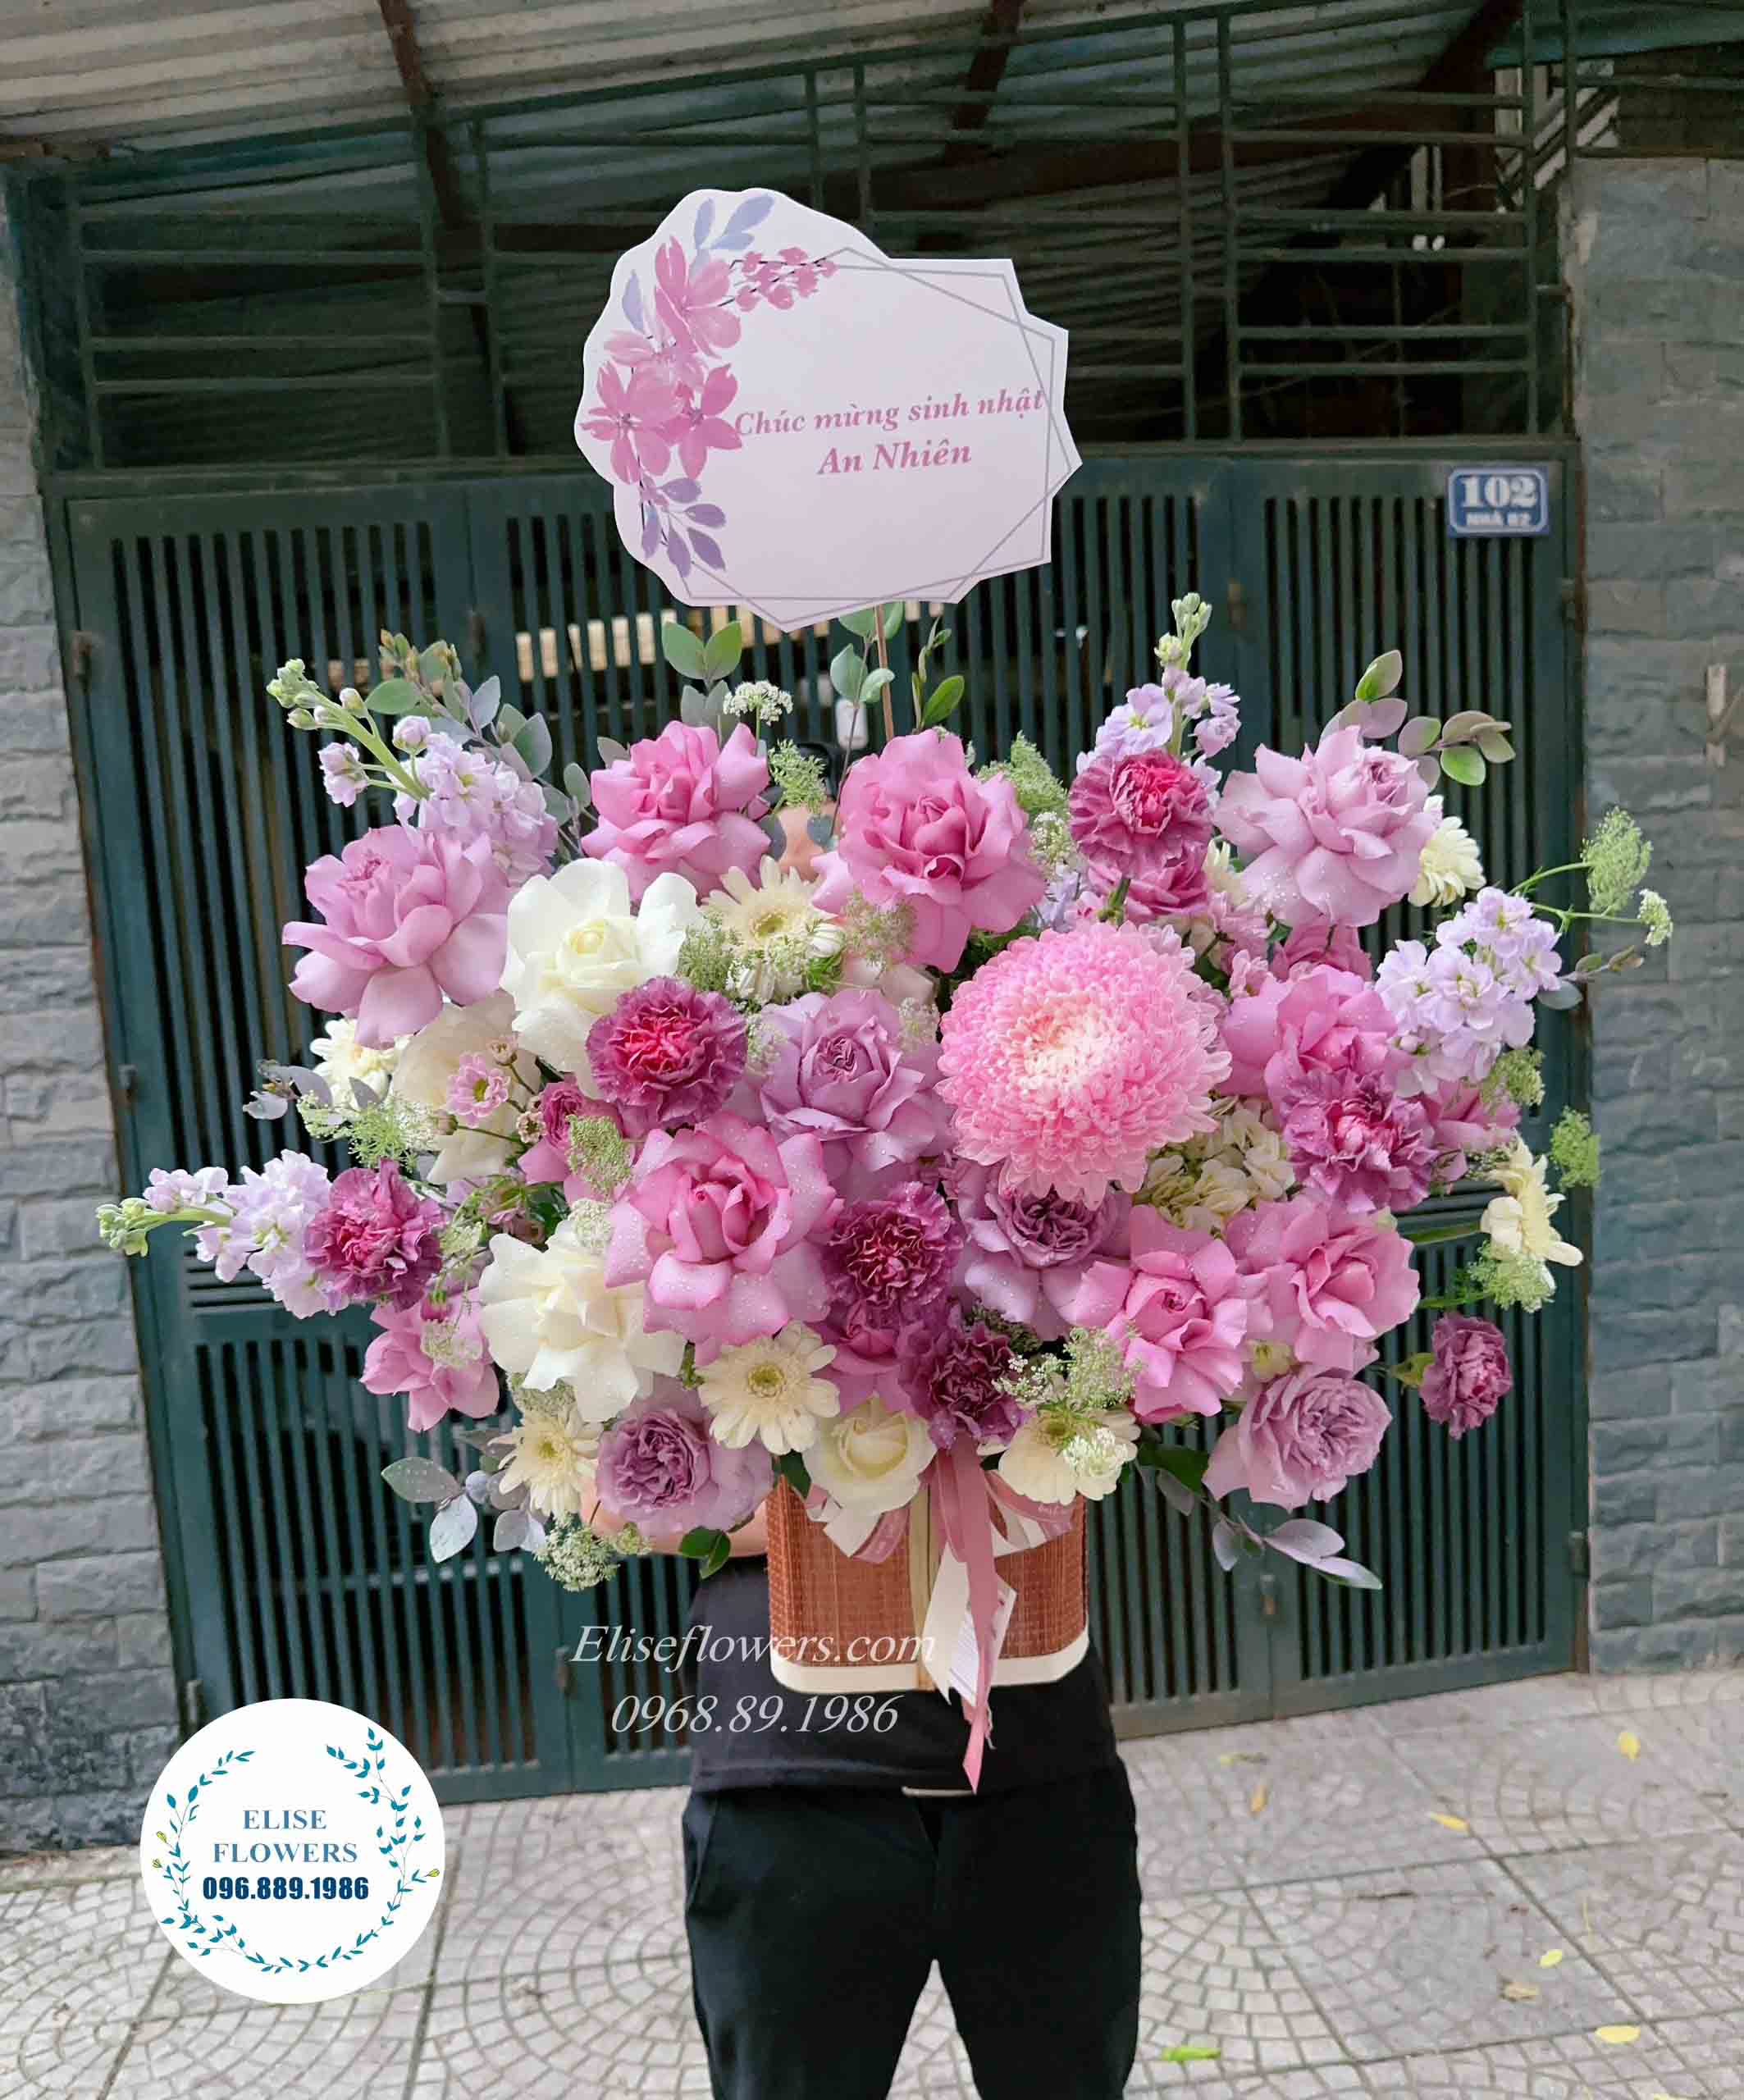 Lẵng hoa chúc mừng sinh nhật sếp nữ - Mẫu hoa tặng sinh nhật sếp đẹp sang trọng ở Hà Nội